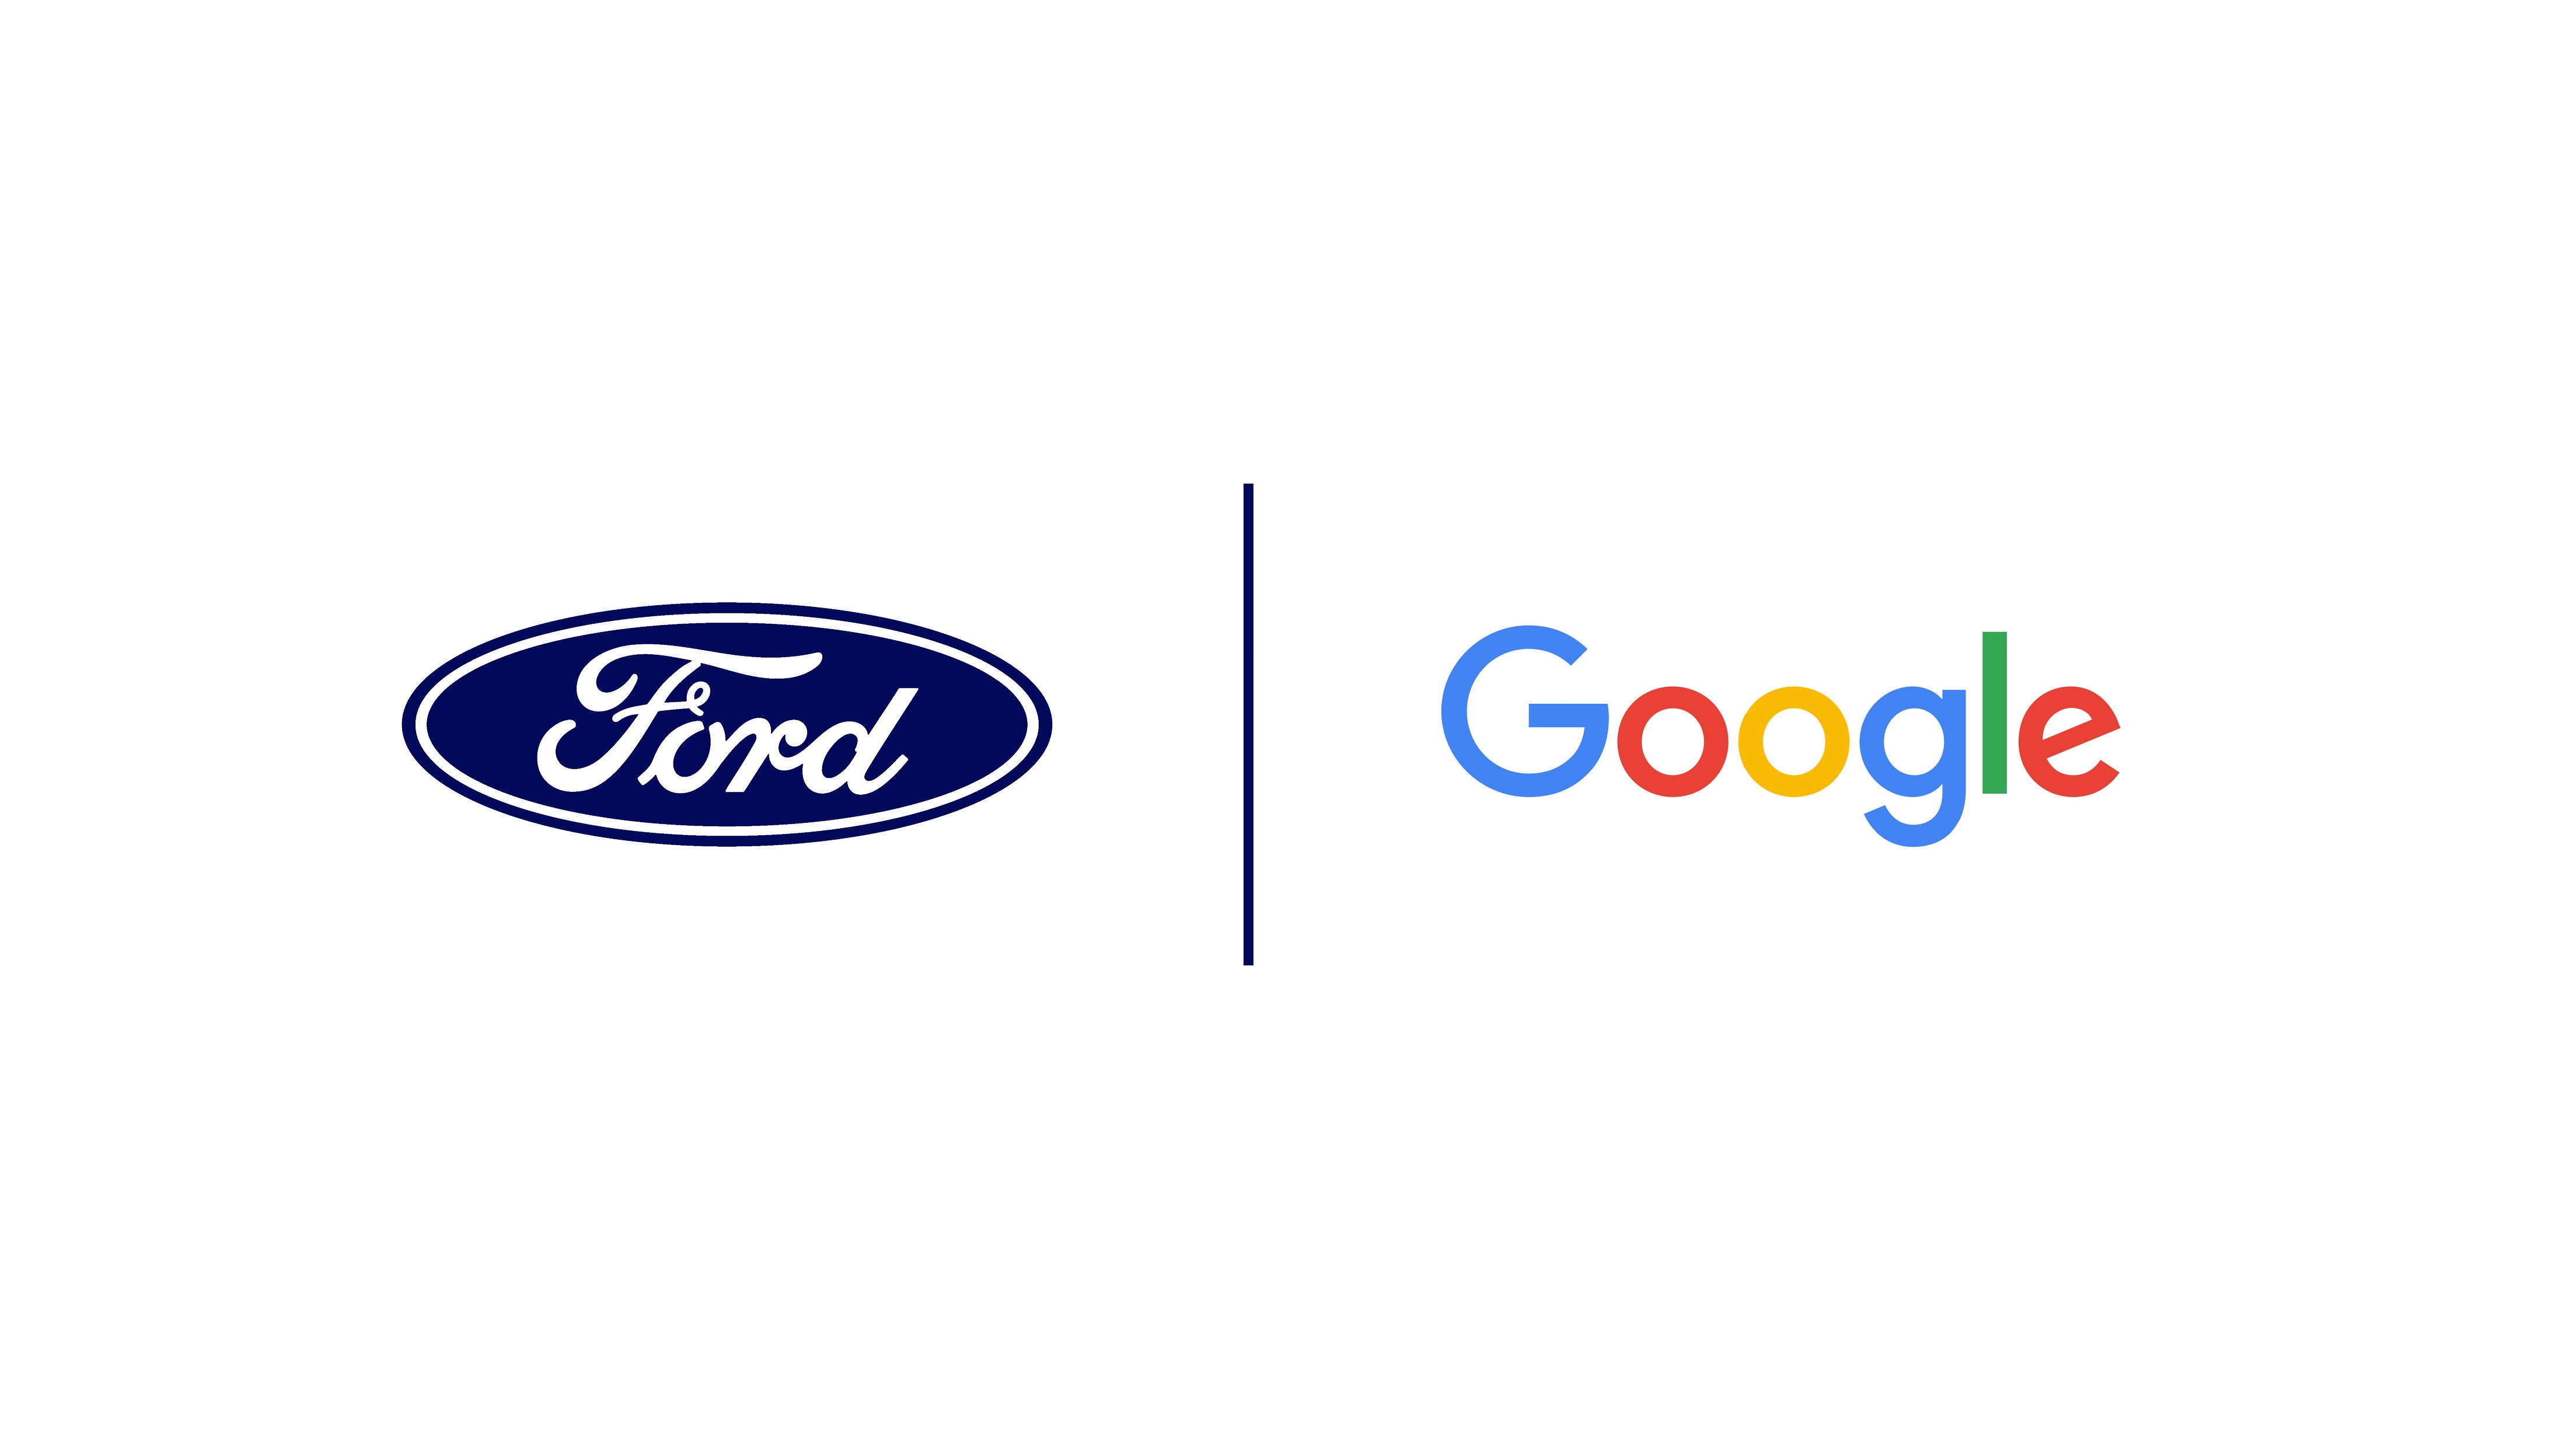 福特汽车和谷歌达成战略合作伙伴关系 加速汽车行业创新,重塑智能网联